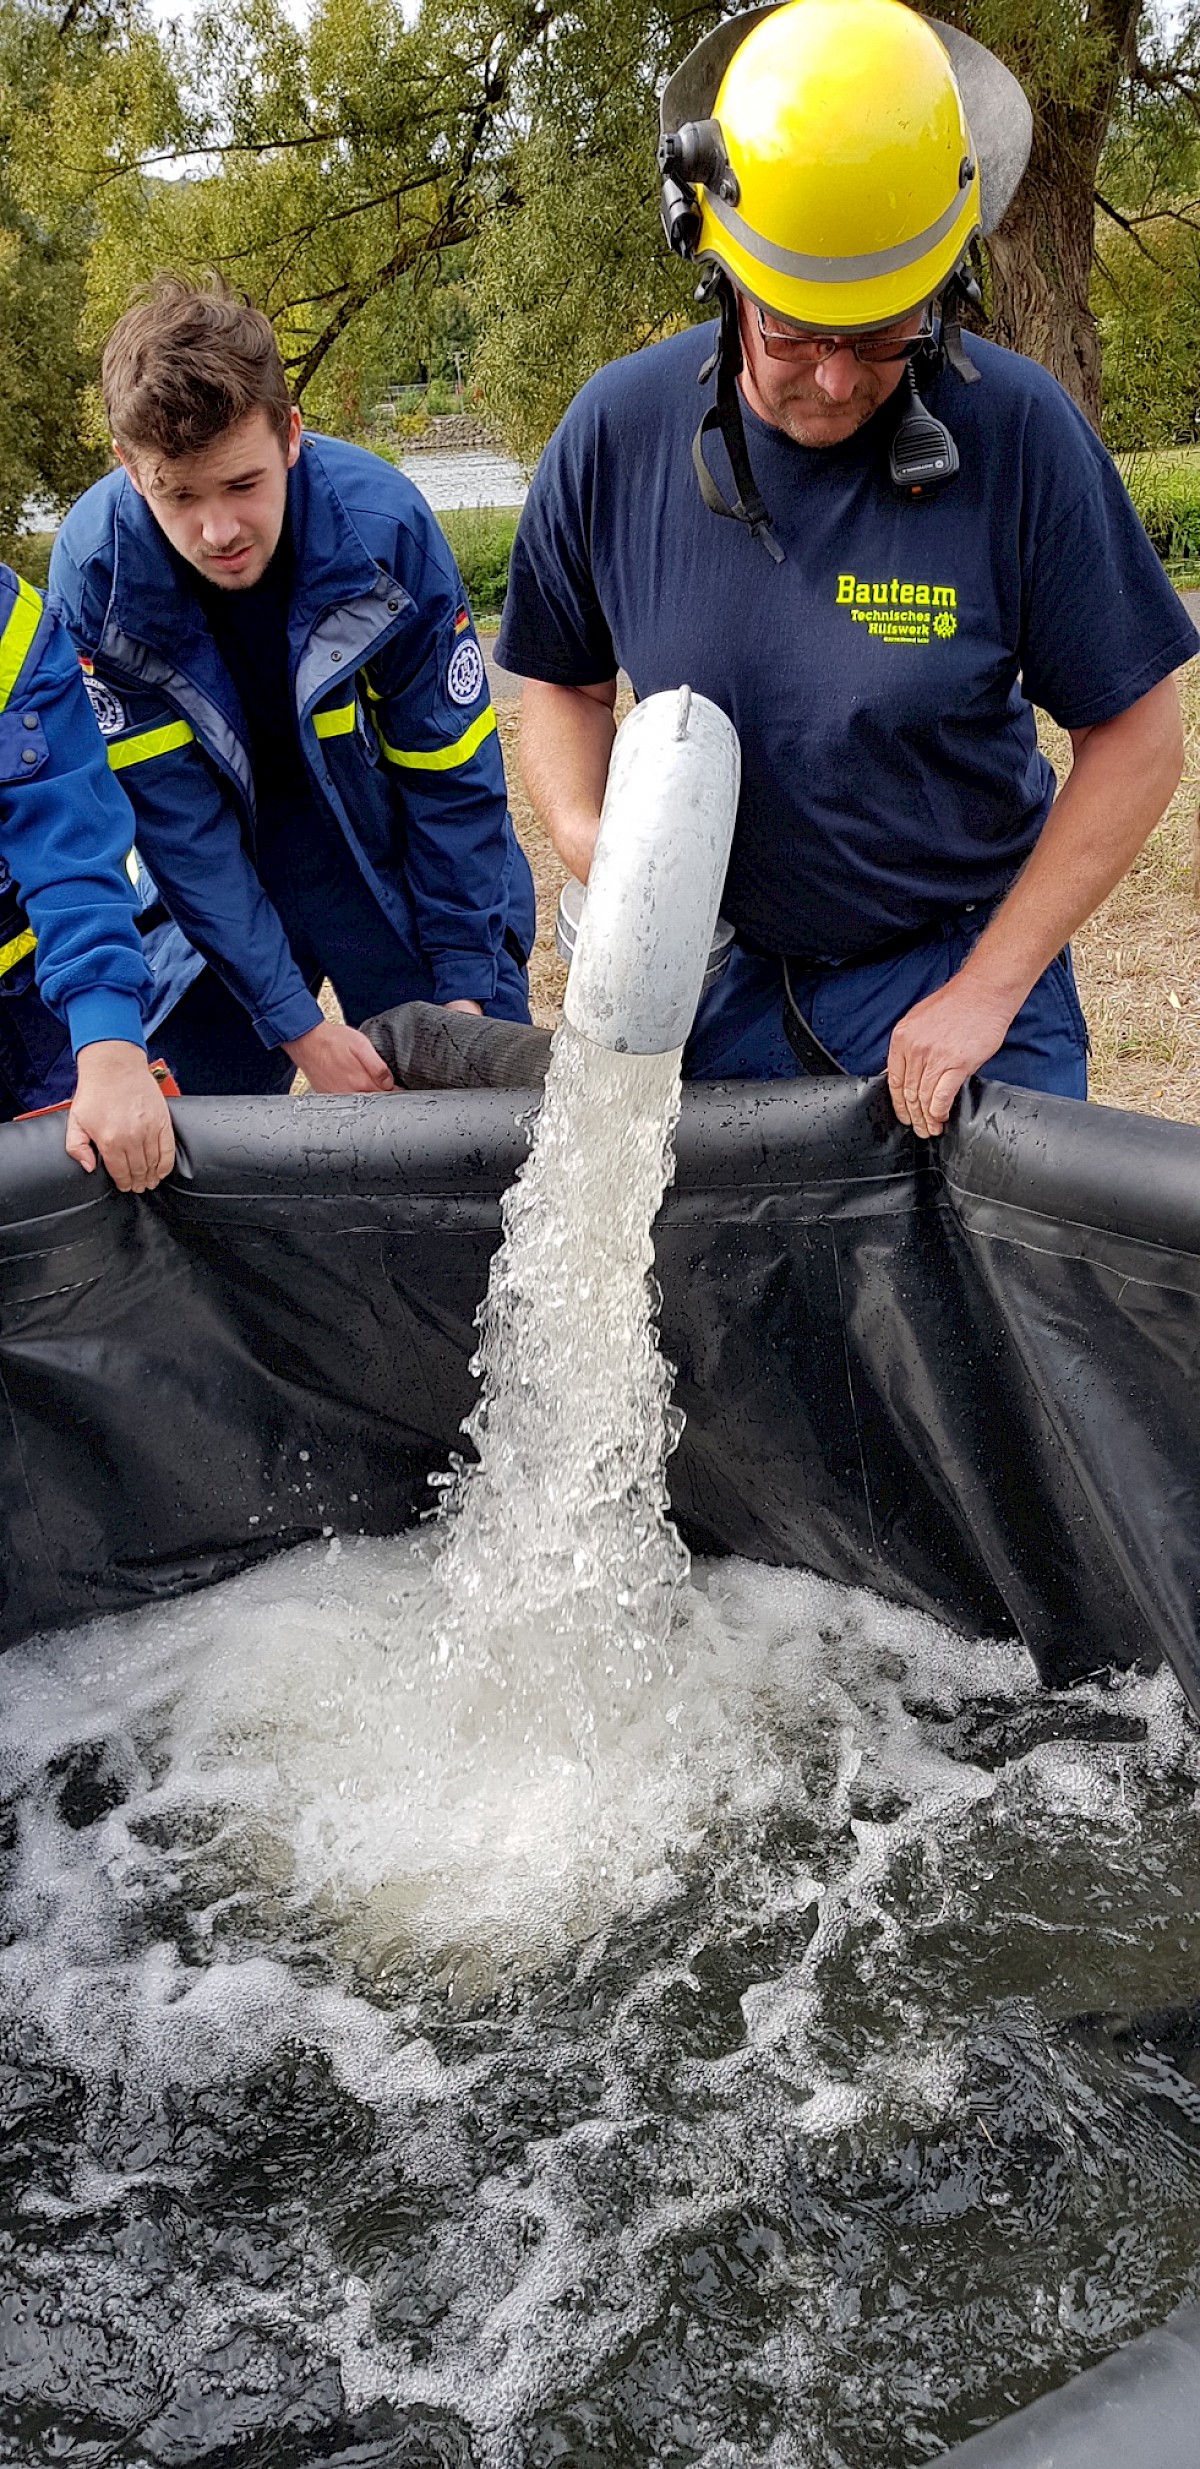 THW Lohr pumpt 70 000 Liter Löschwasser bei Herbstübung